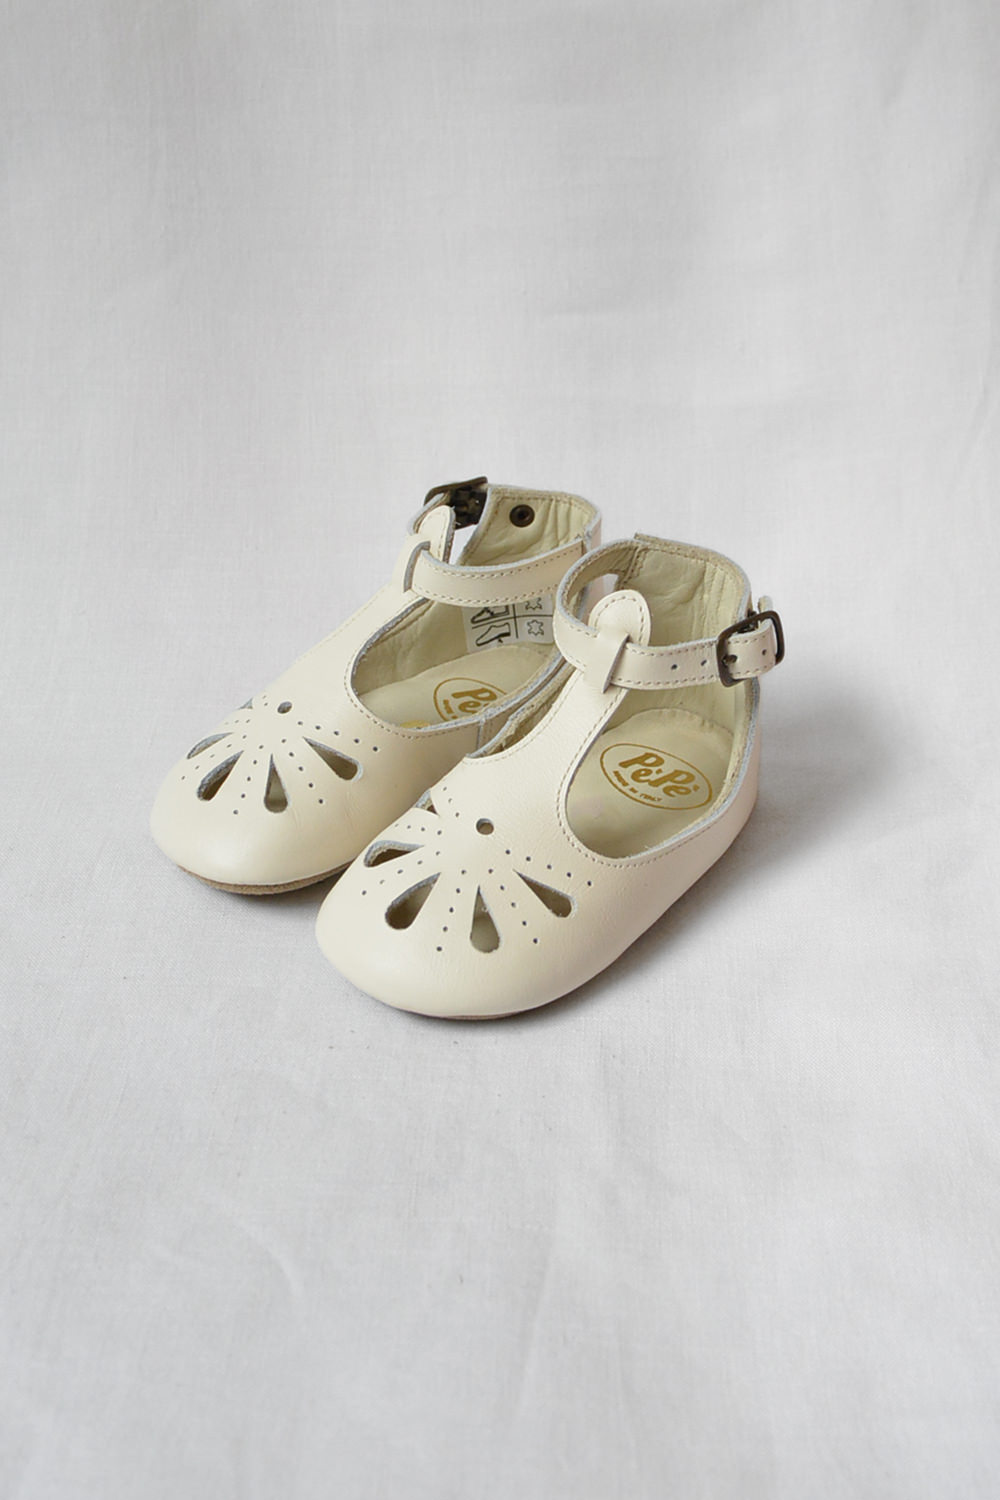 PePe Baby Shoes Mary Jane - Cream. Main.